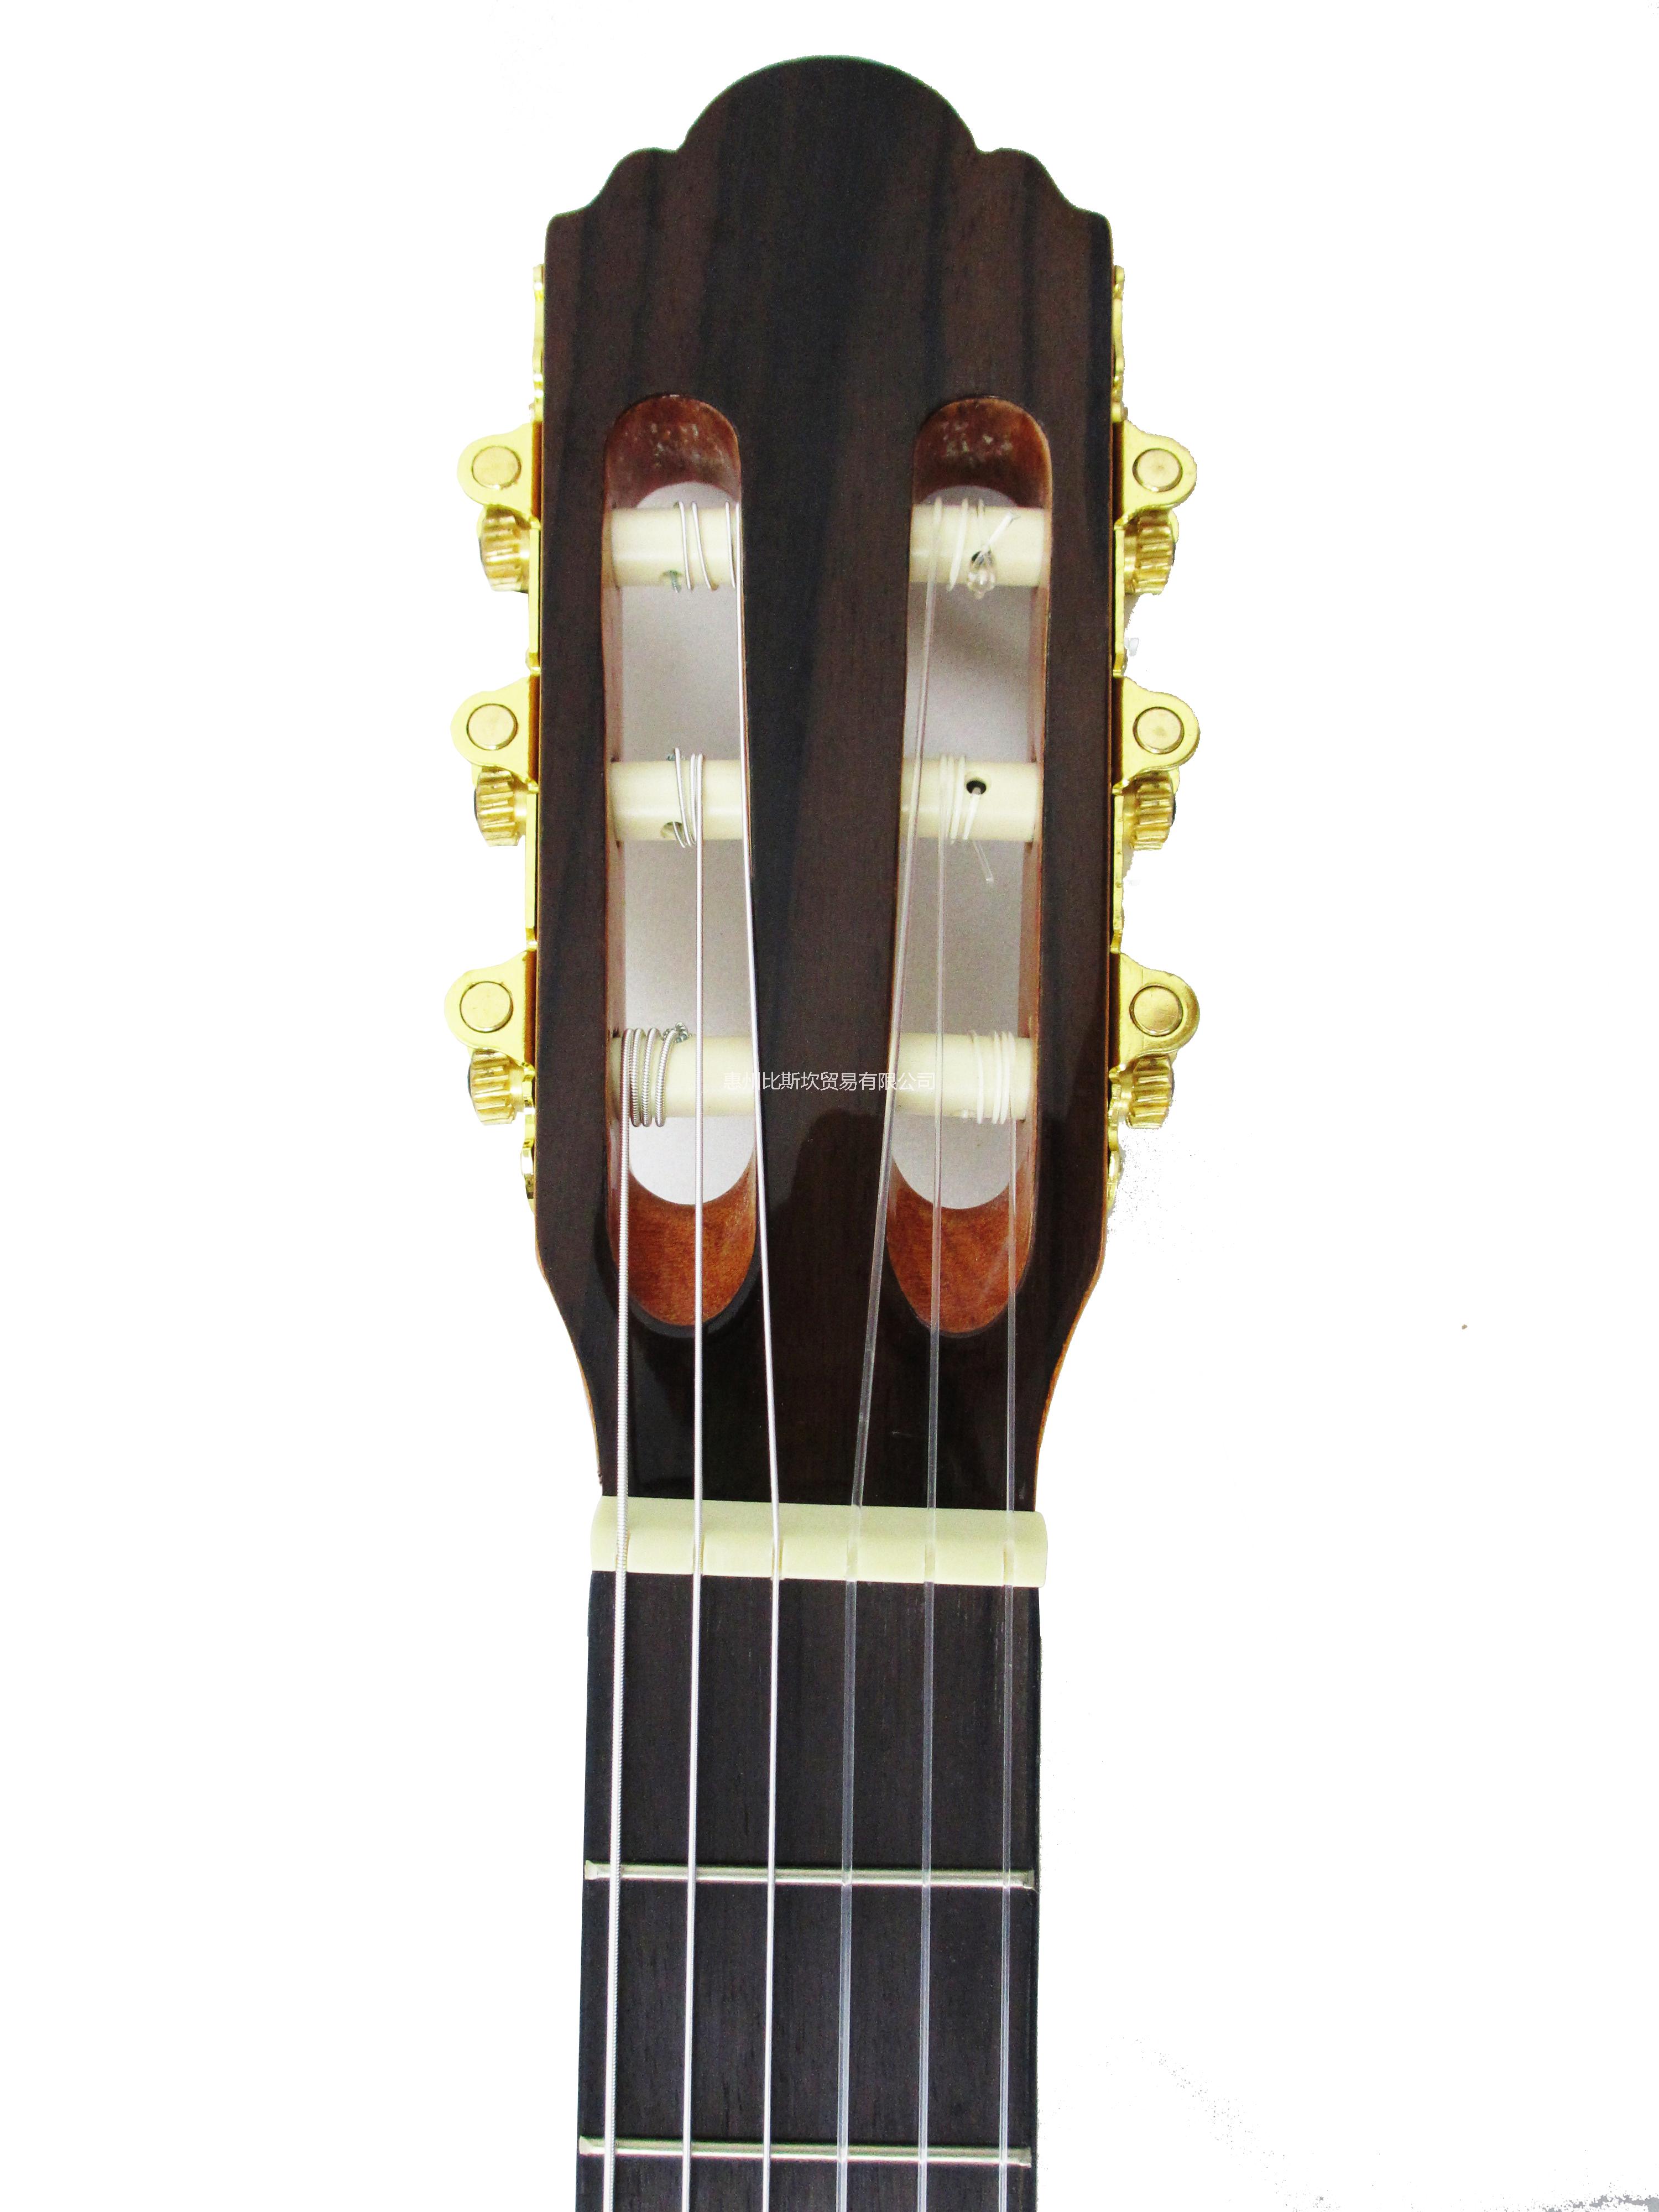 惠州市马丁尼出品36寸红杉玫瑰木古典吉他厂家供应马丁尼出品36寸红杉玫瑰木古典吉他迷你款